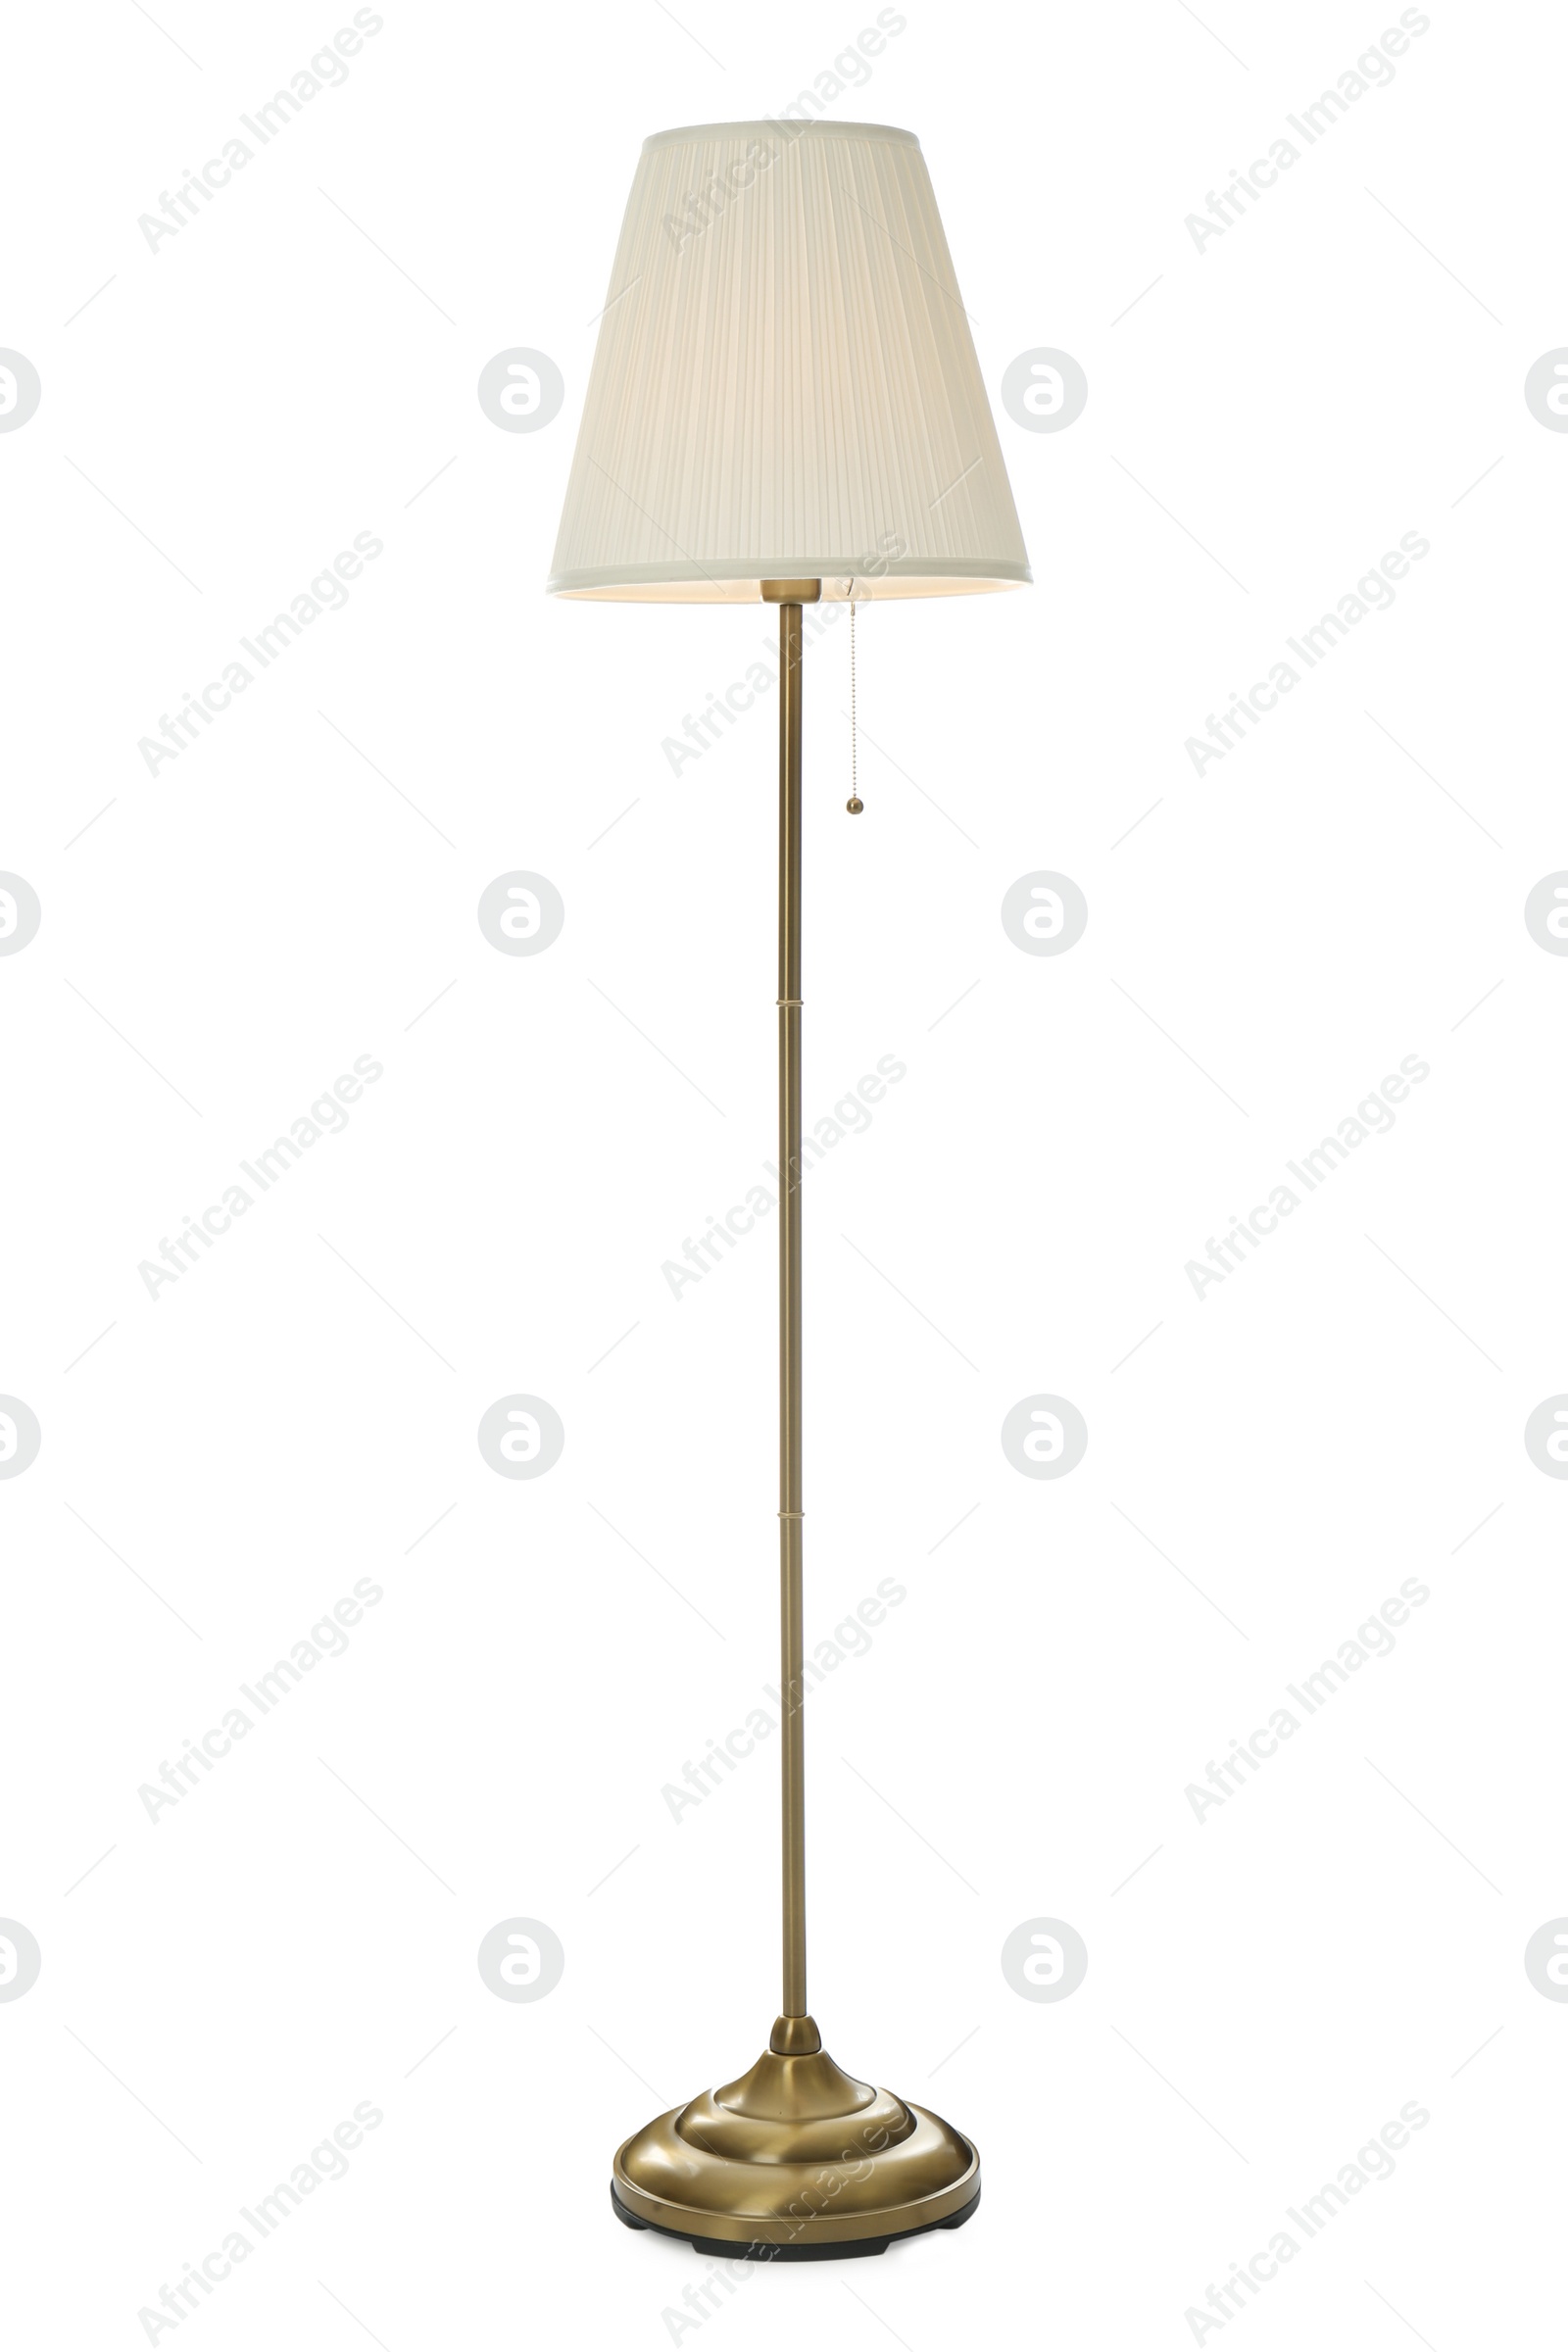 Photo of Stylish elegant floor lamp isolated on white